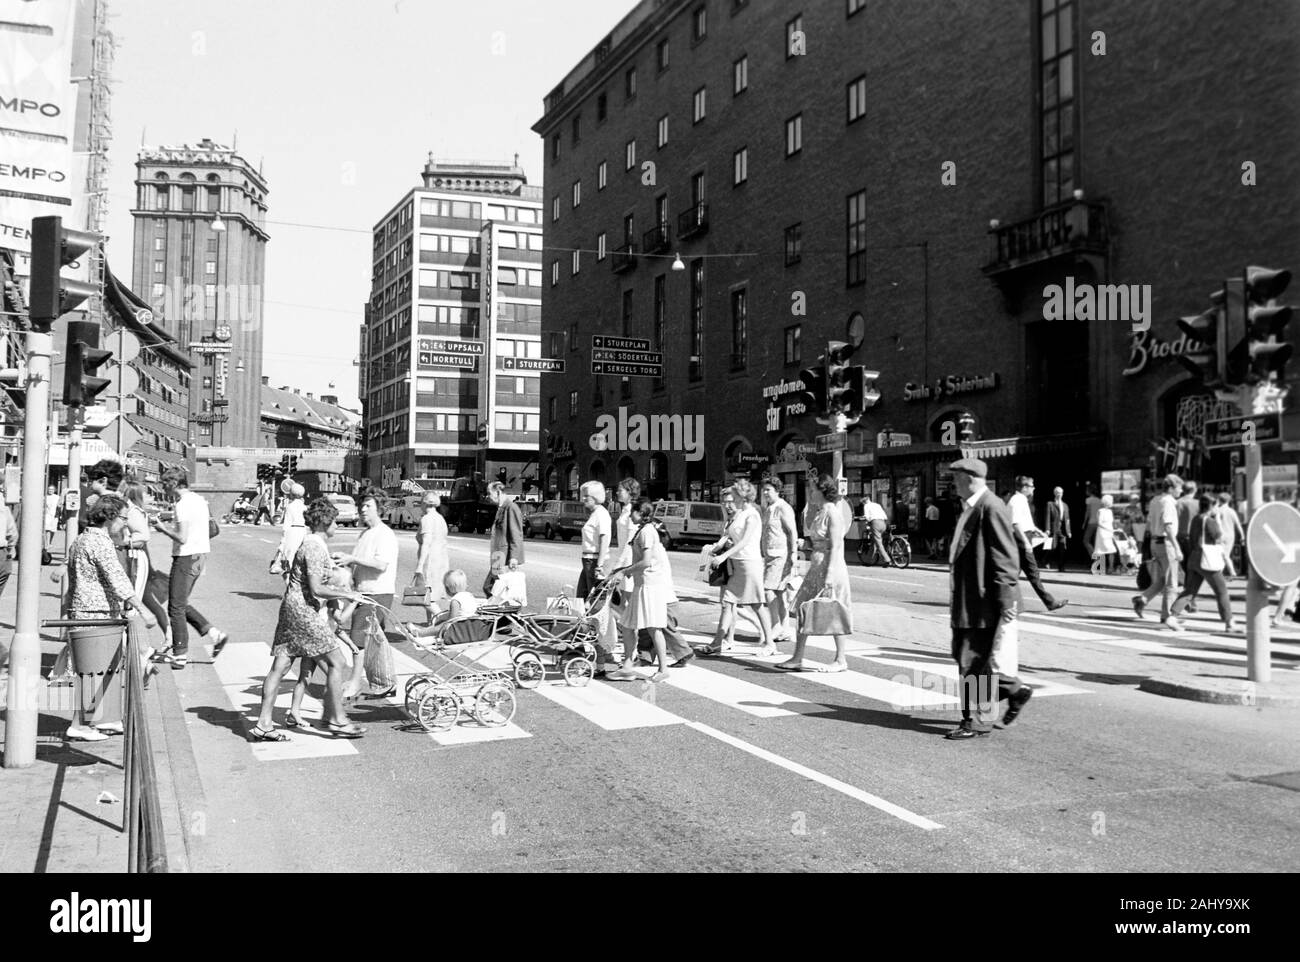 Fußgänger auf der Kungsgatan, 1969. Pedestrians on Kungsgatan, 1969. Stock Photo